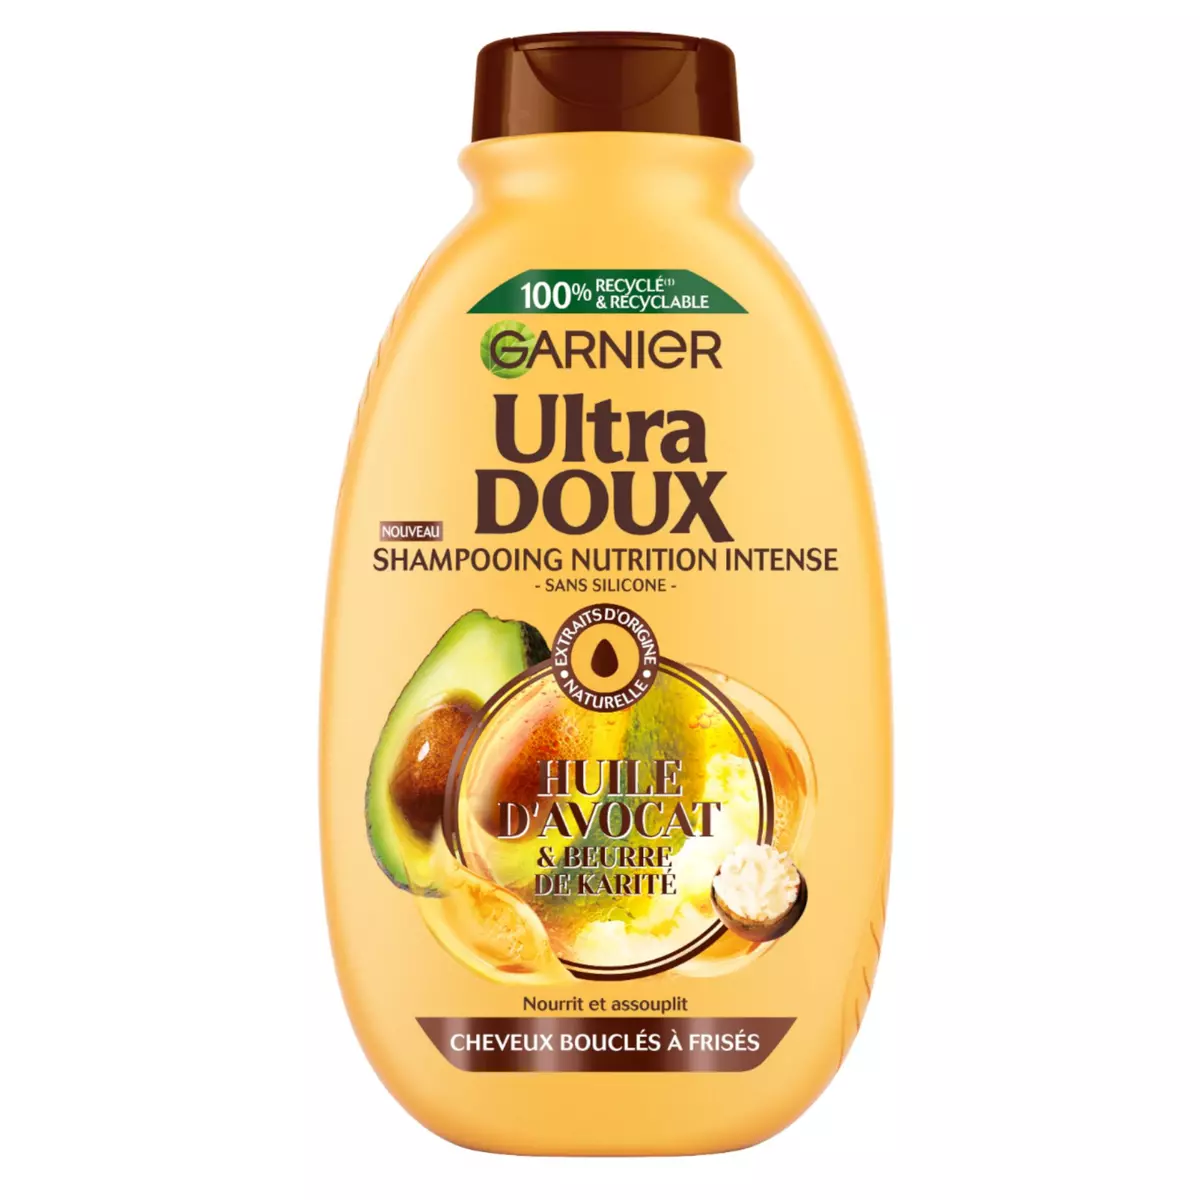 ULTRA DOUX Shampooing nutrition intense huile d'avocat et beurre de karité cheveux bouclés frisés 250ml